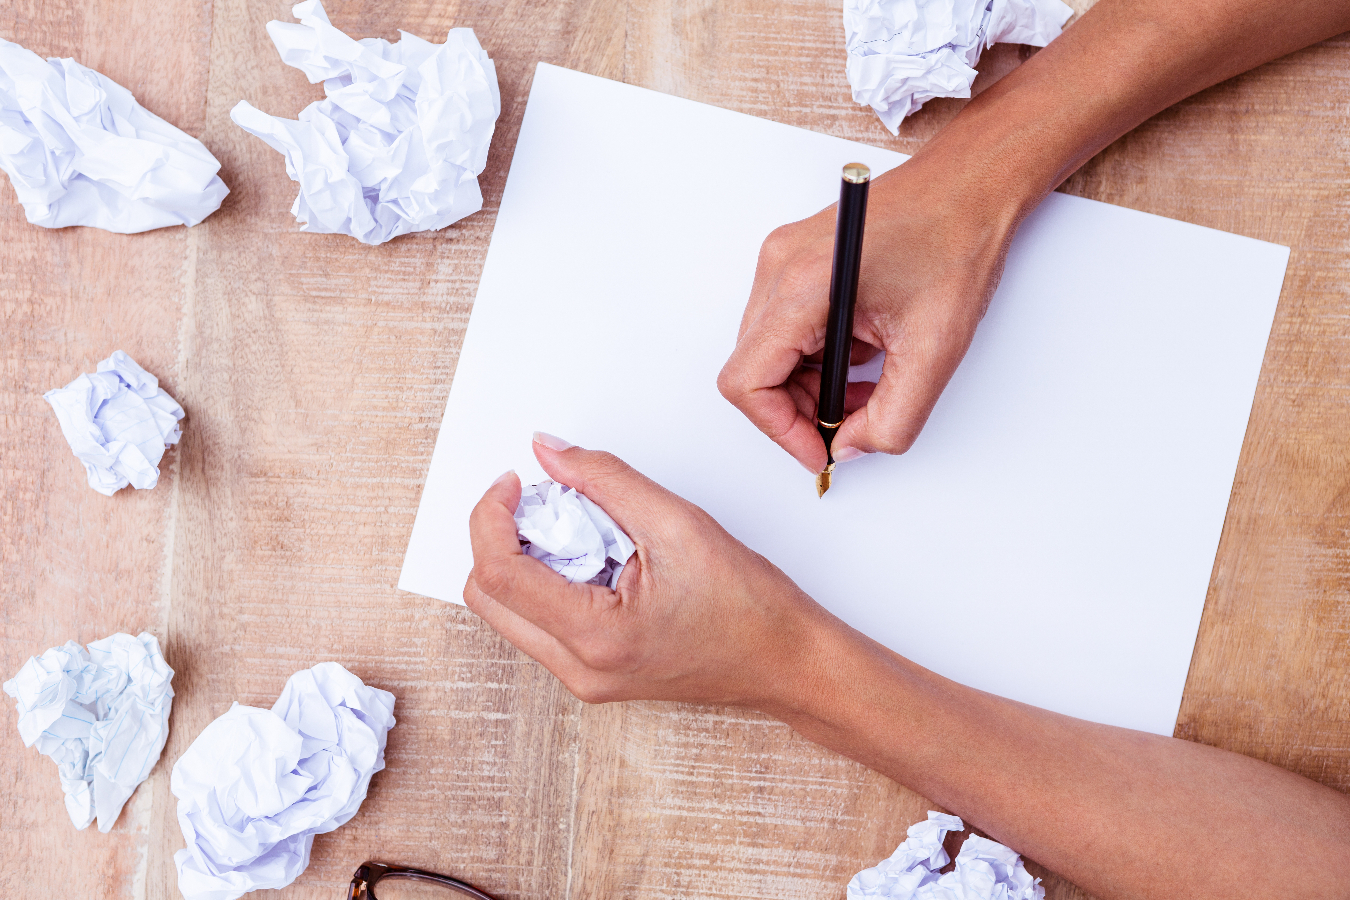 Escrever sobre a raiva e depois jogar o papel fora pode ajudar